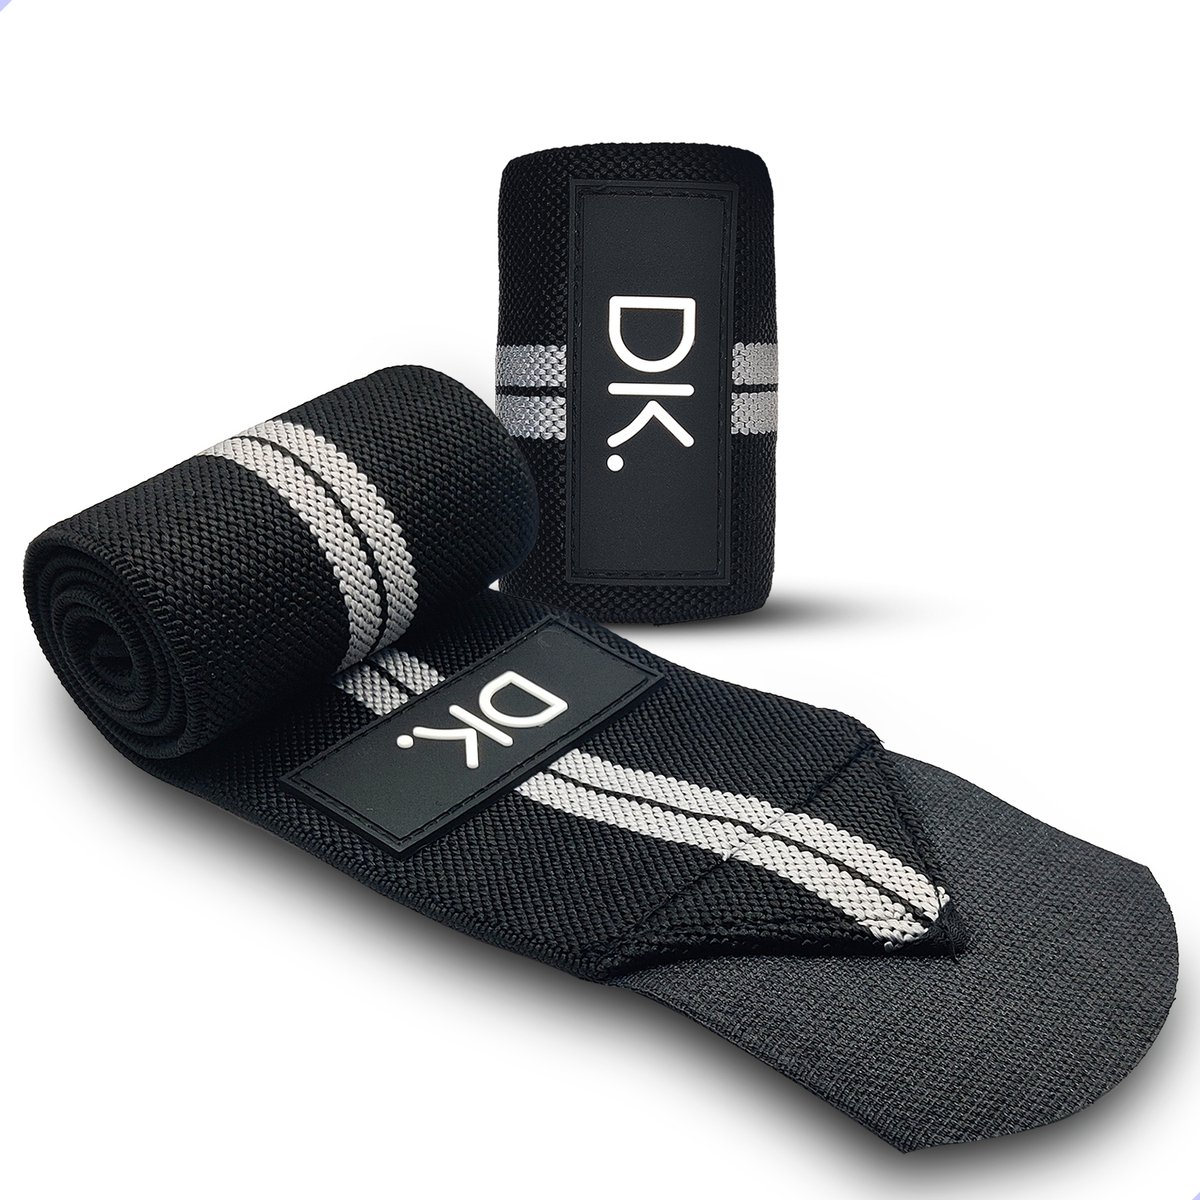 DK.® Wrist Wraps voor Fitness & Crossfit - Polsbanden voor Krachttraining - Polsbrace - Polsbandage - 2 stuks - Grijs/Zwart